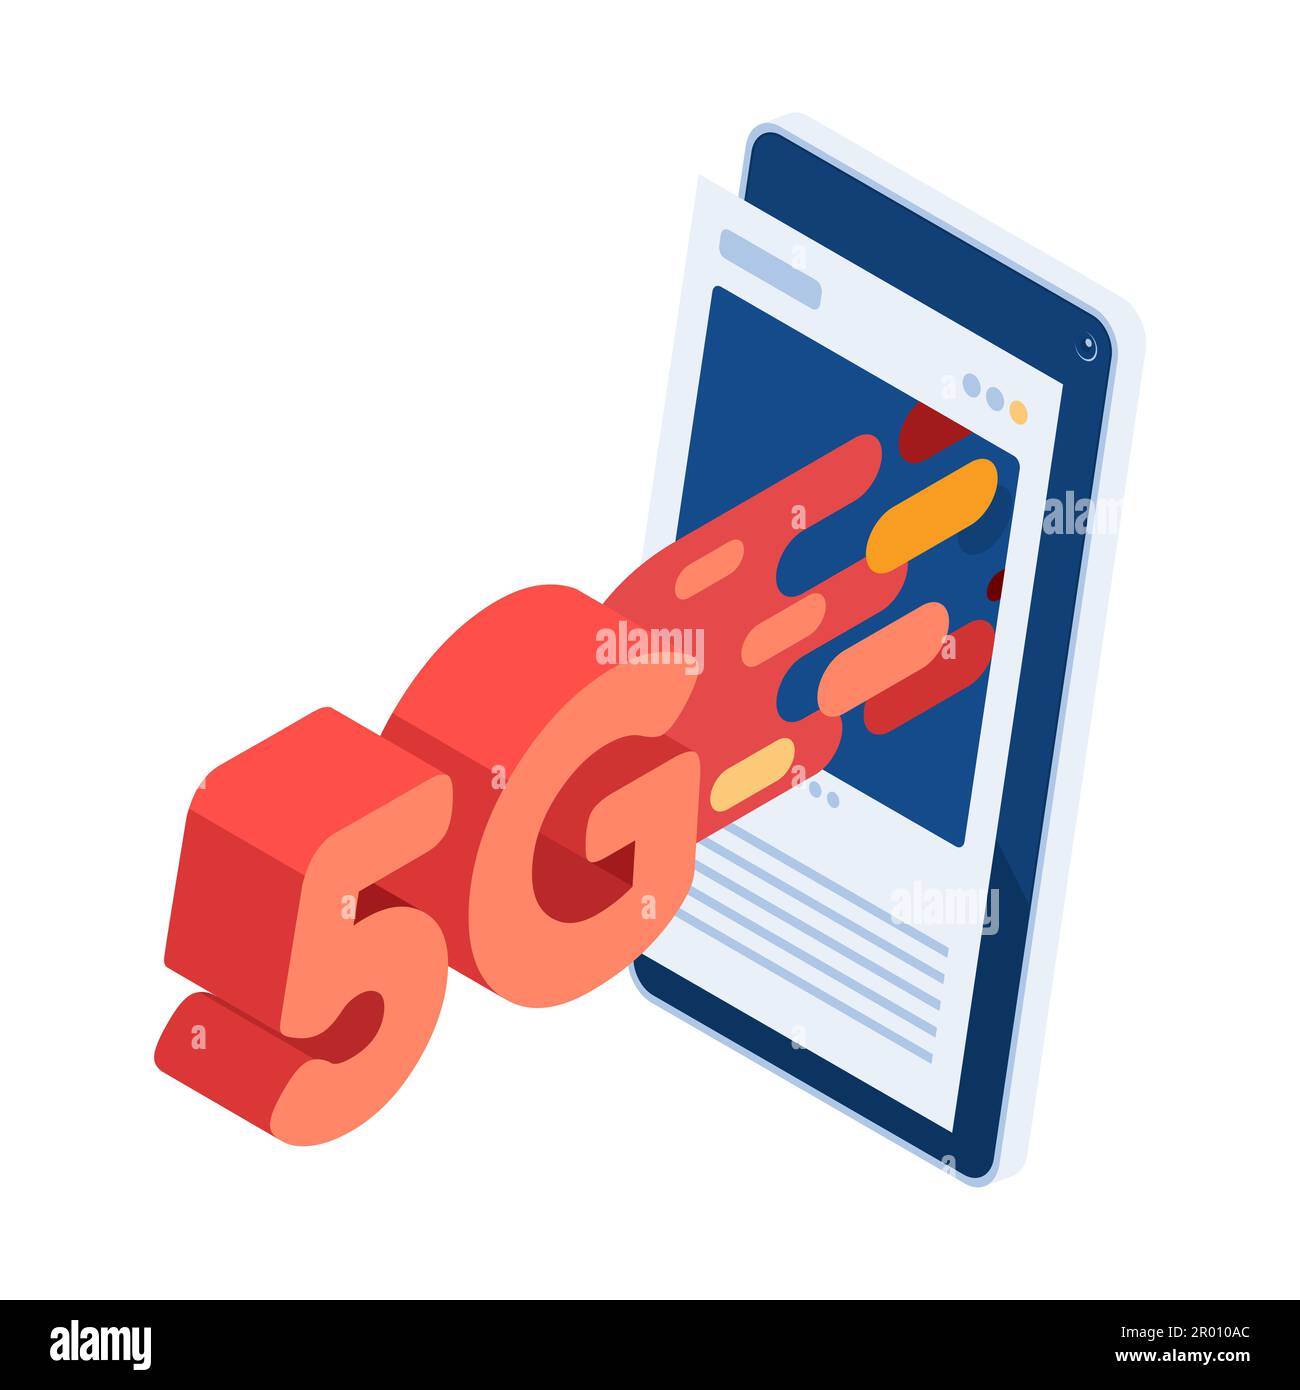 Flaches 3D Isometrisches 5G-Hochgeschwindigkeitsnetzwerk kommt aus sozialen Medien. 5G High-Speed-Netzwerktechnologie und drahtlose Internetverbindung Stock Vektor